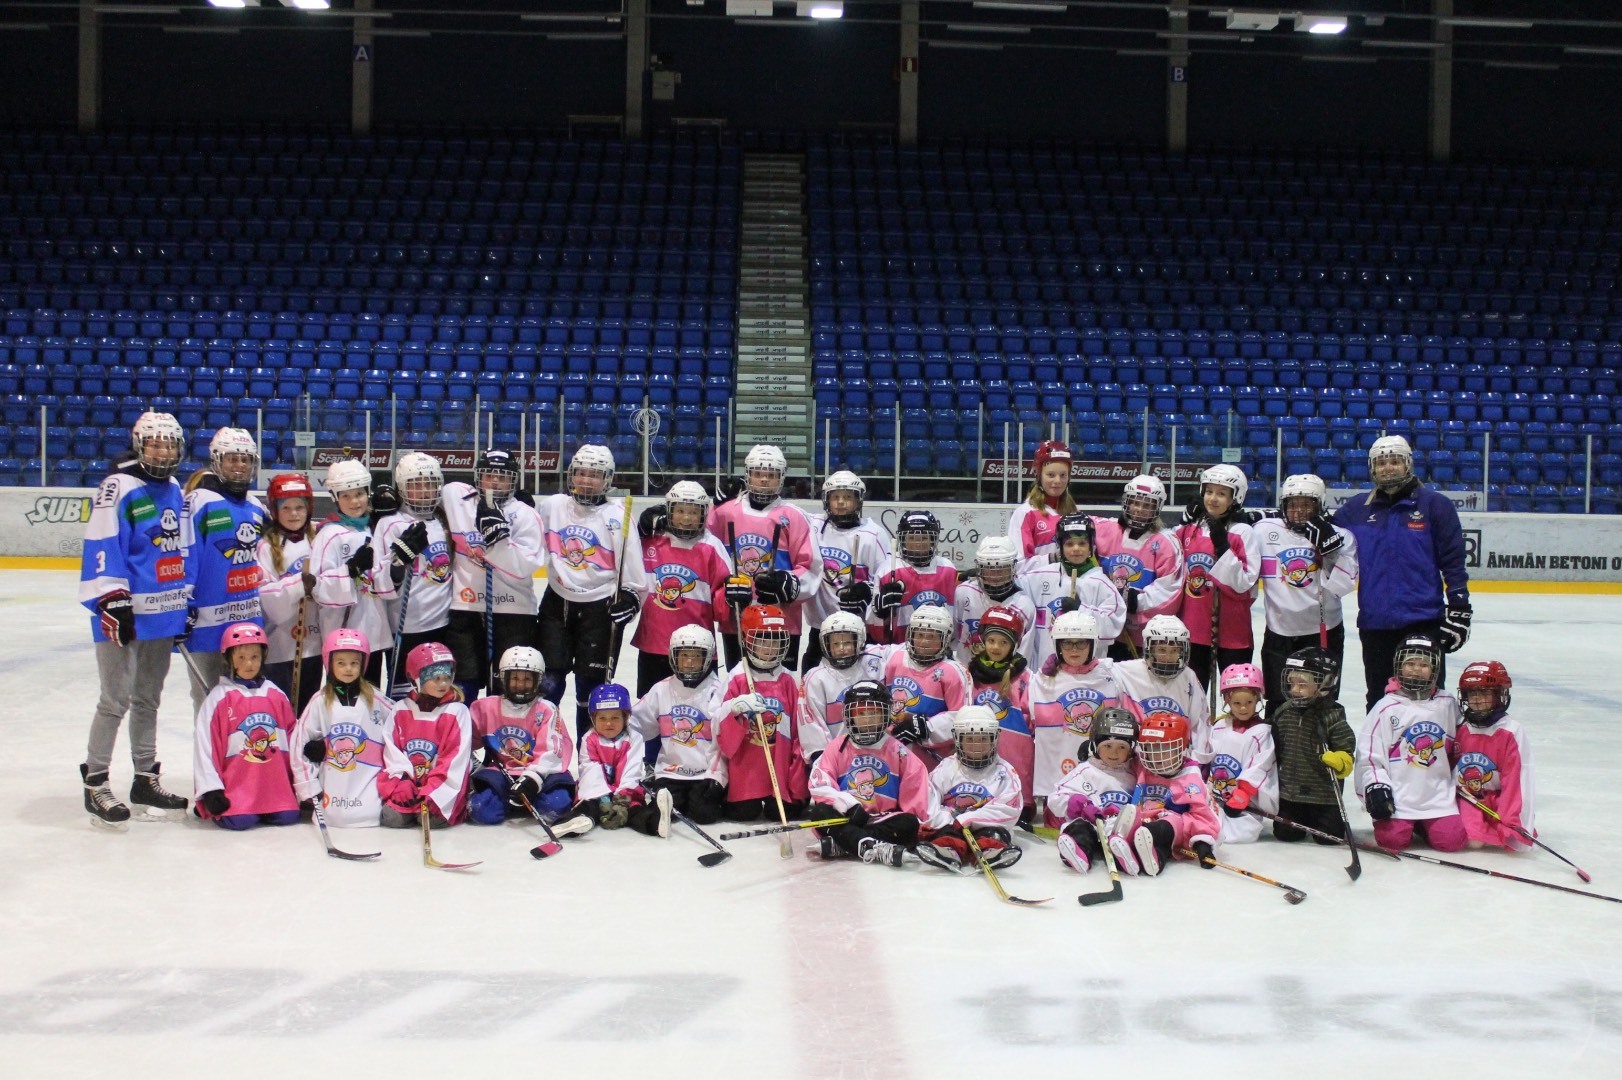 Girl's Hockey Day oli täynnä menoa ja meininkiä